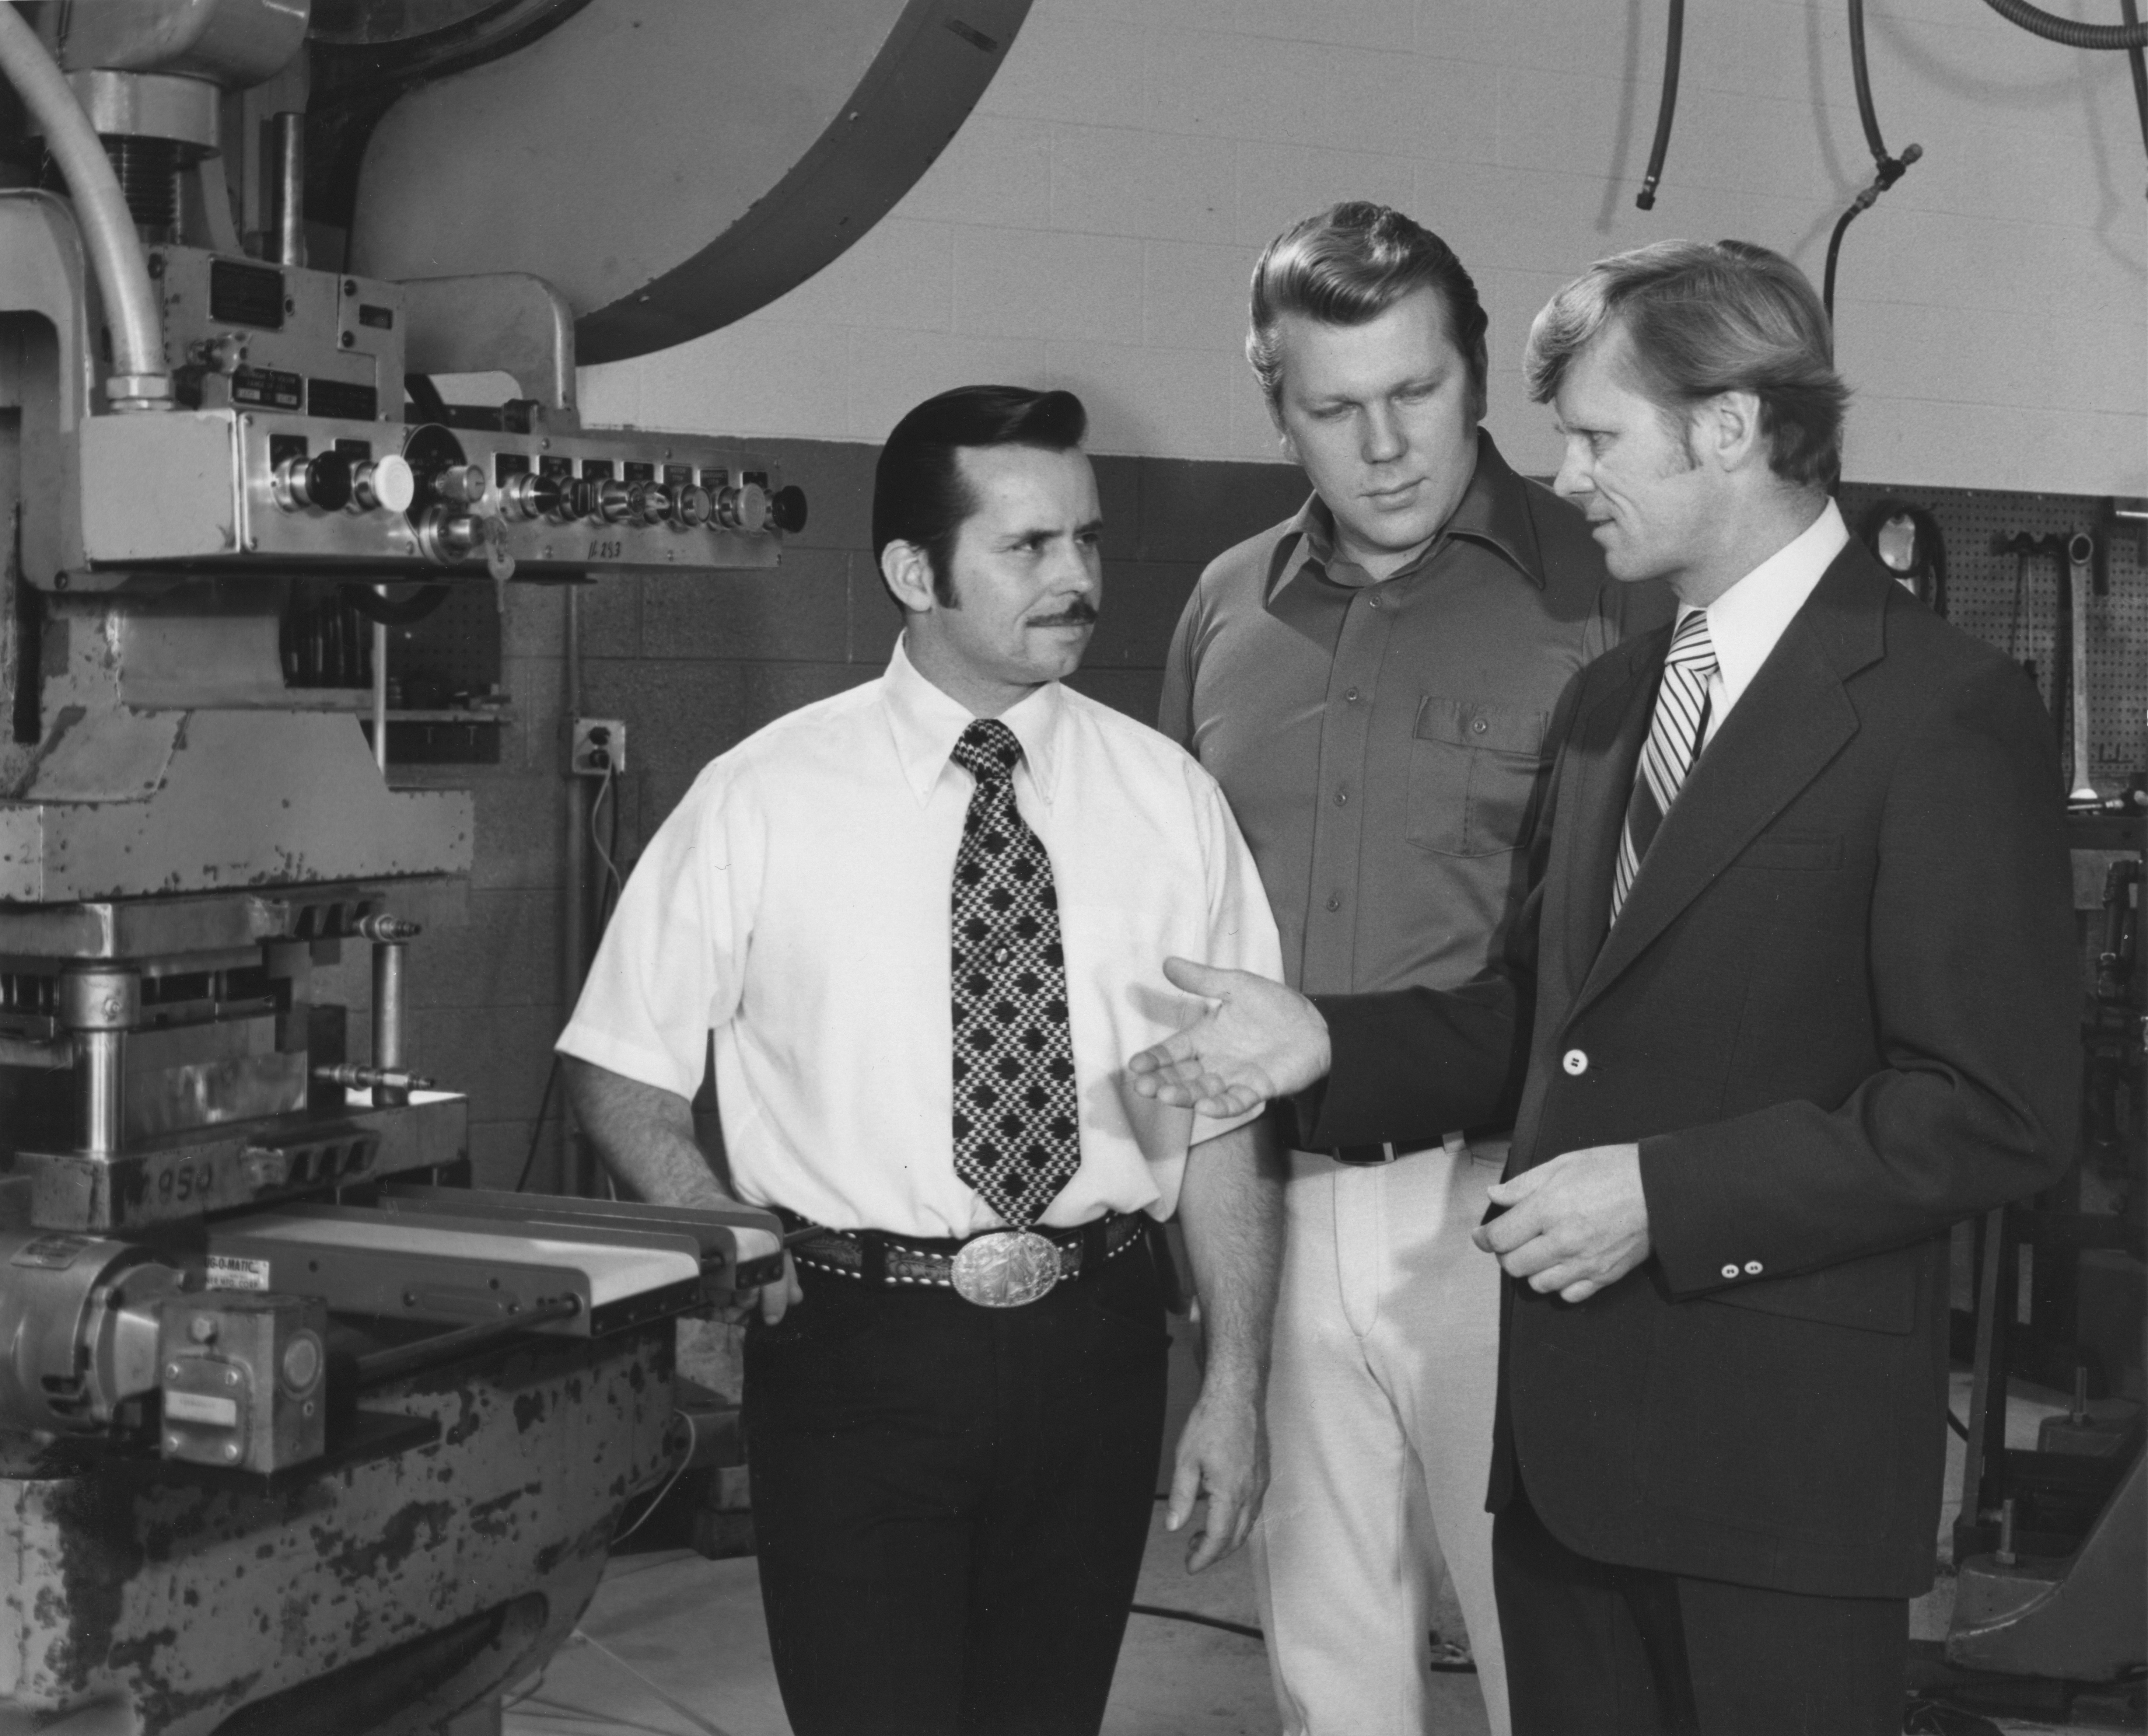 Pictured from left to right are Horst Dorner, Werner Dorner and Wolfgang Dorner.